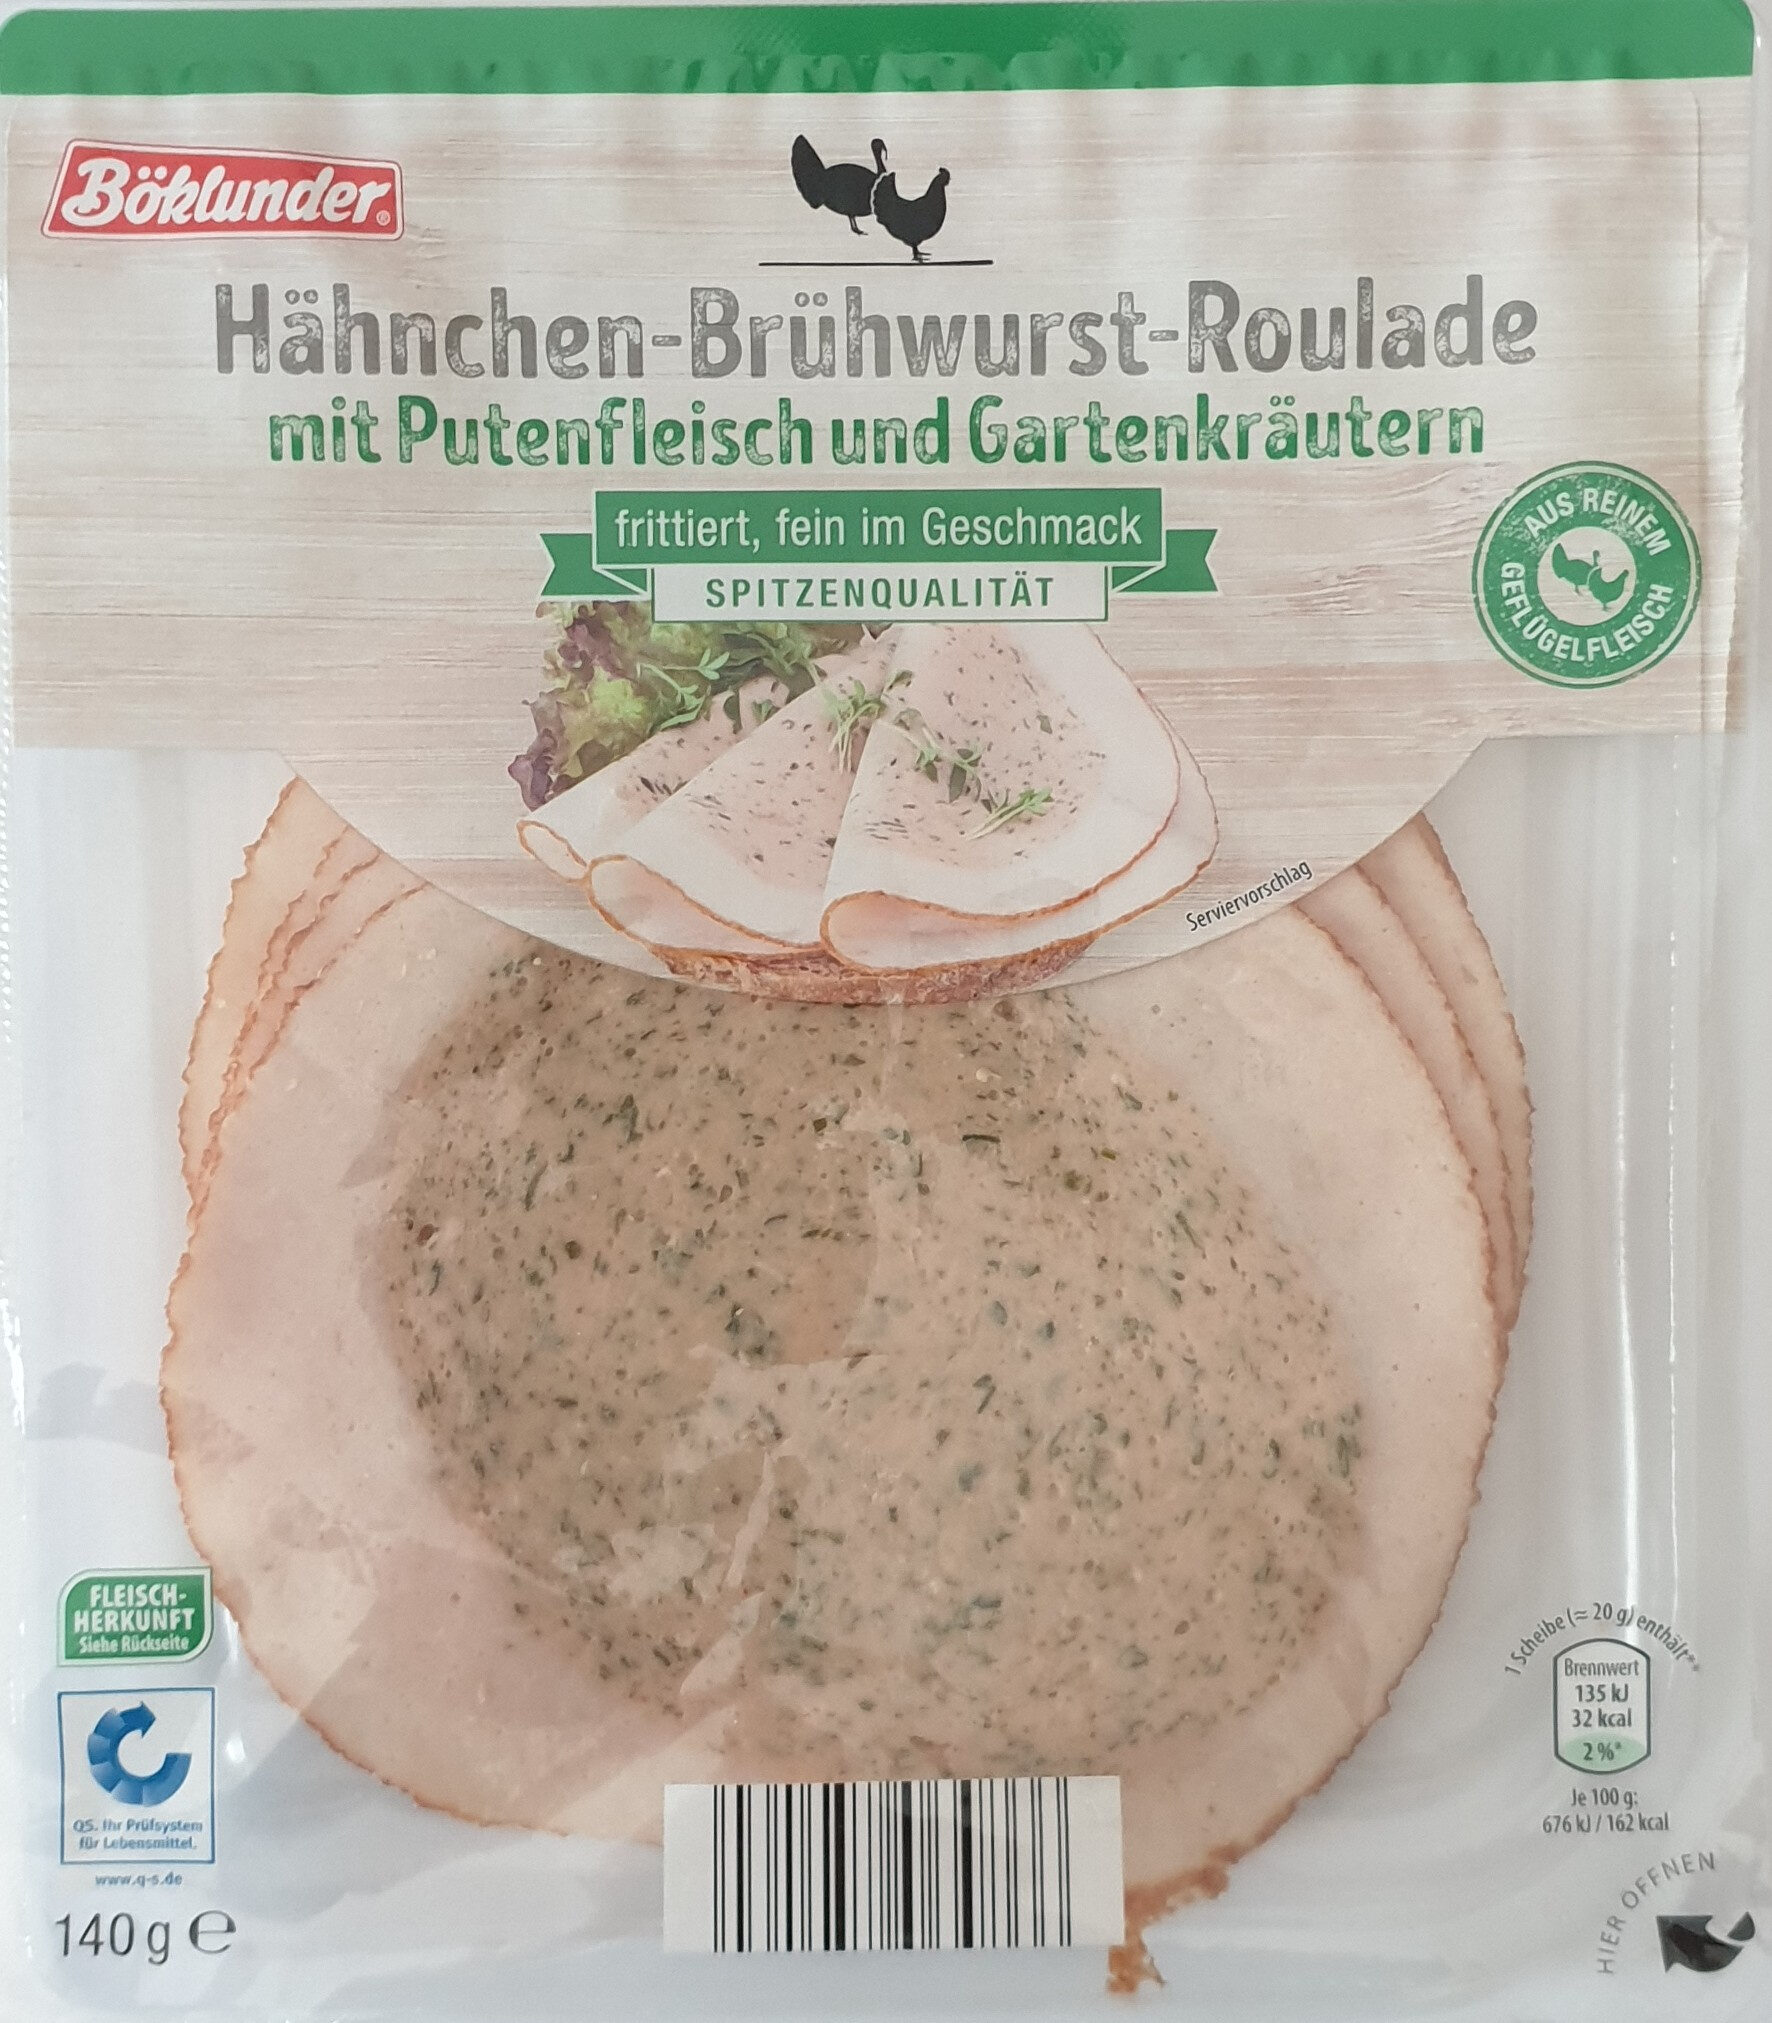 Hähnchen-Brühwurst-Roulade frittiert - Product - de